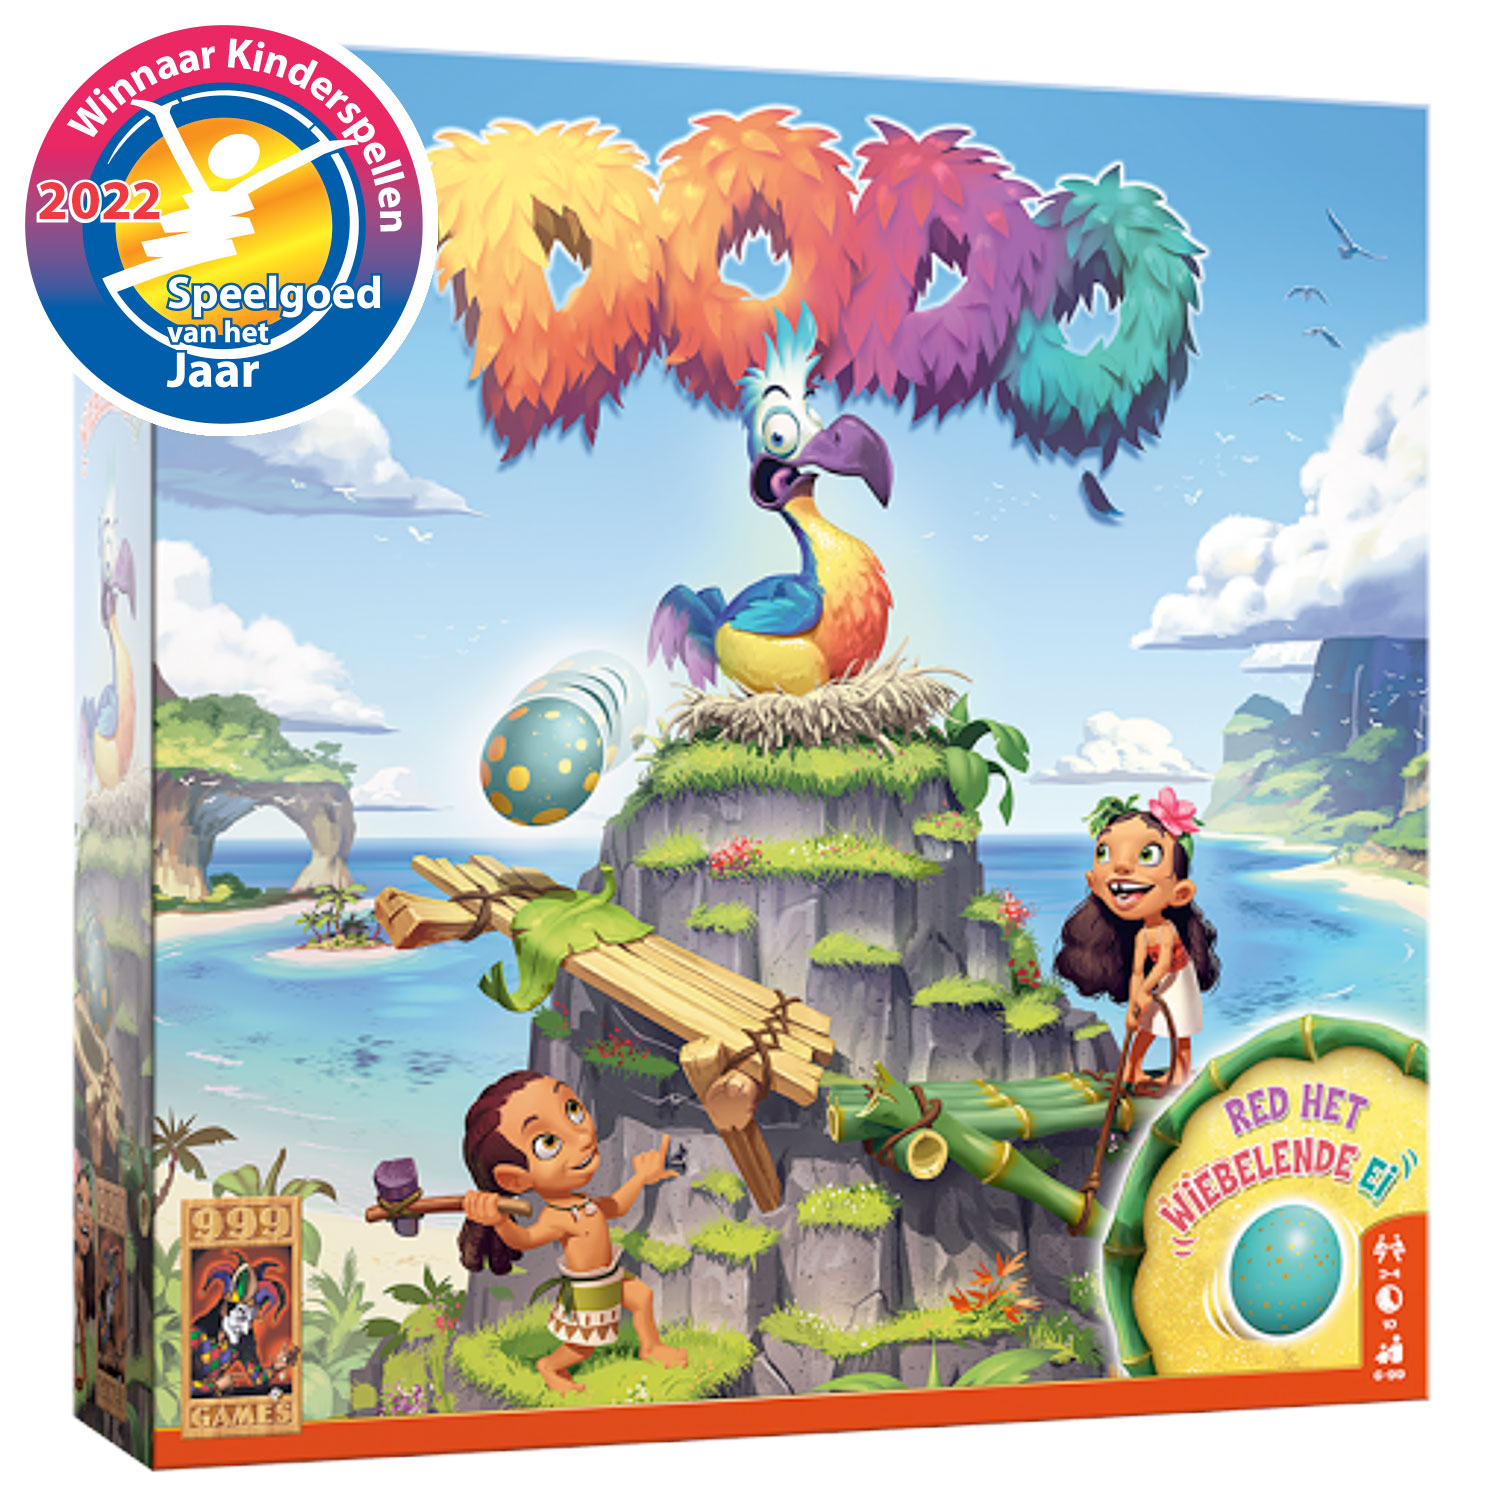 999 Games Dodo - Bordspel